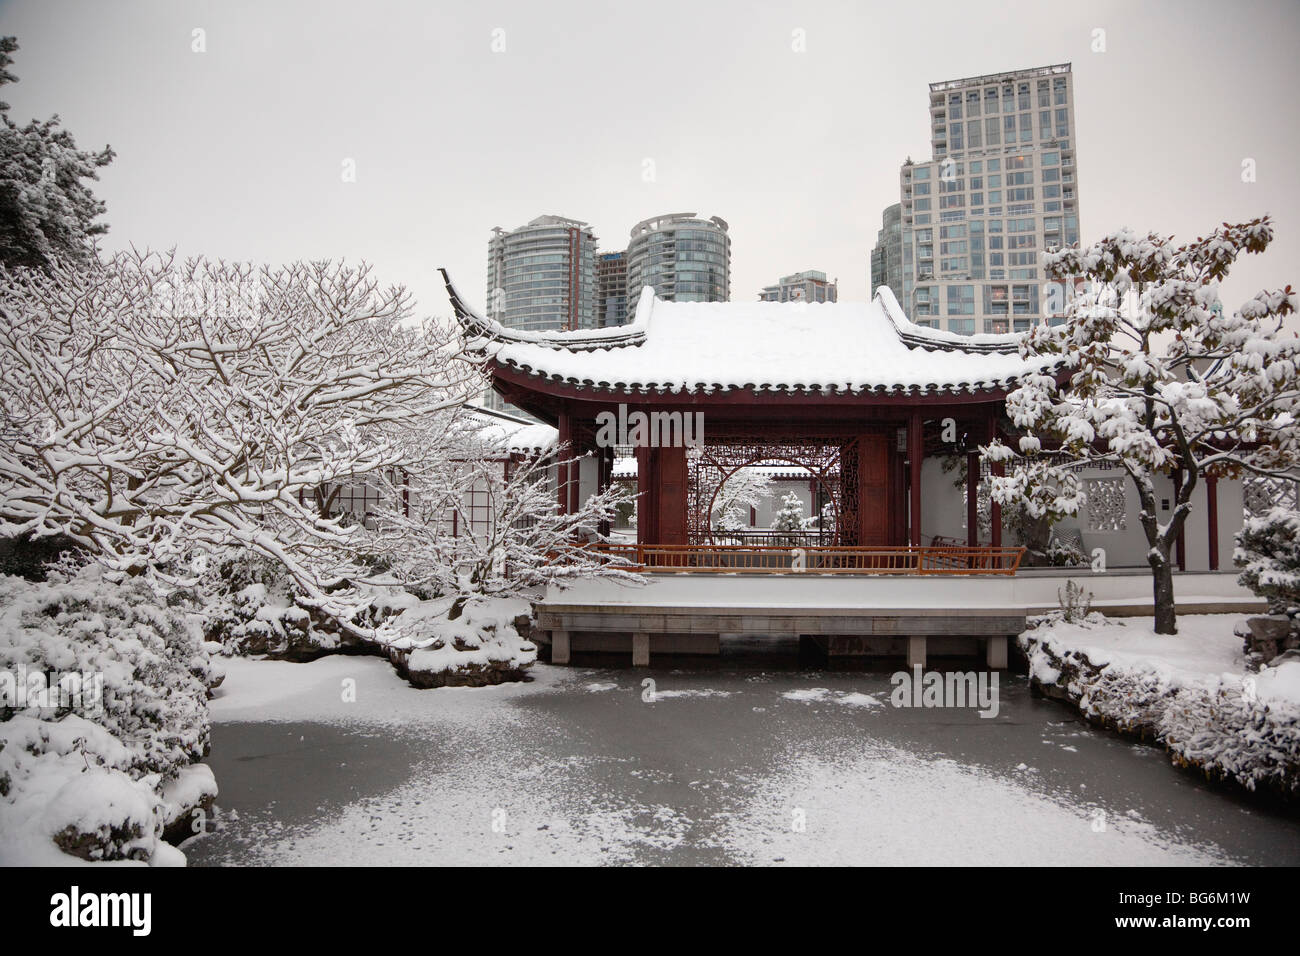 Il dott. Sun Yat-Sen classico giardino Cinese dopo una nevicata invernale, Vancouver, BC, Canada Foto Stock